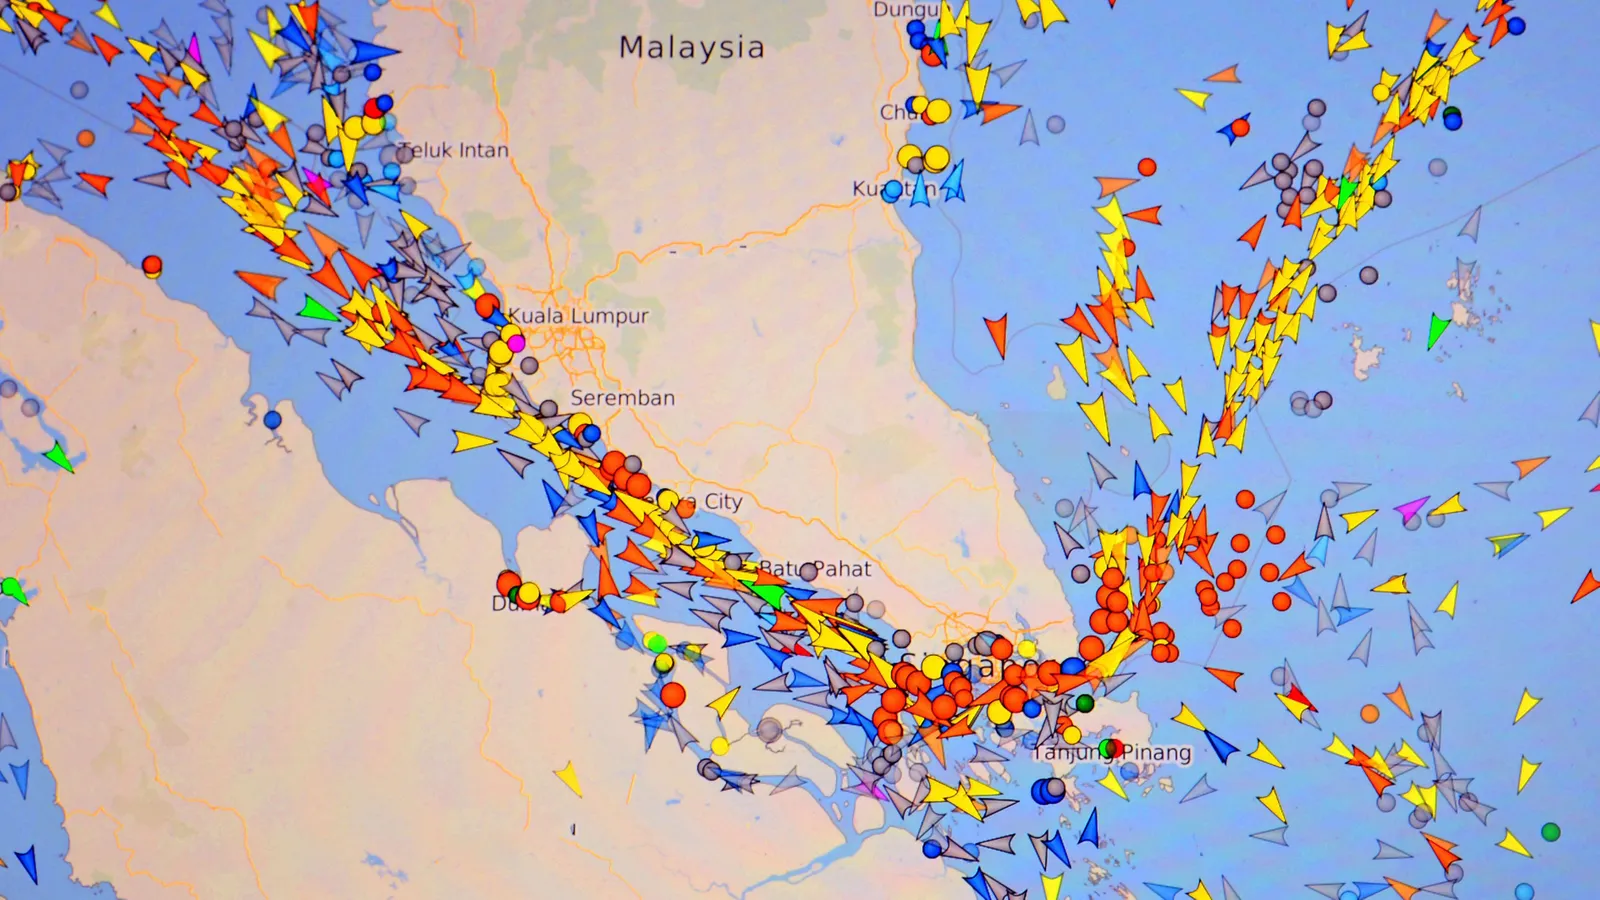 Tecnologia de rastreamento revela volume de tráfego de navios no estreito de Malaca